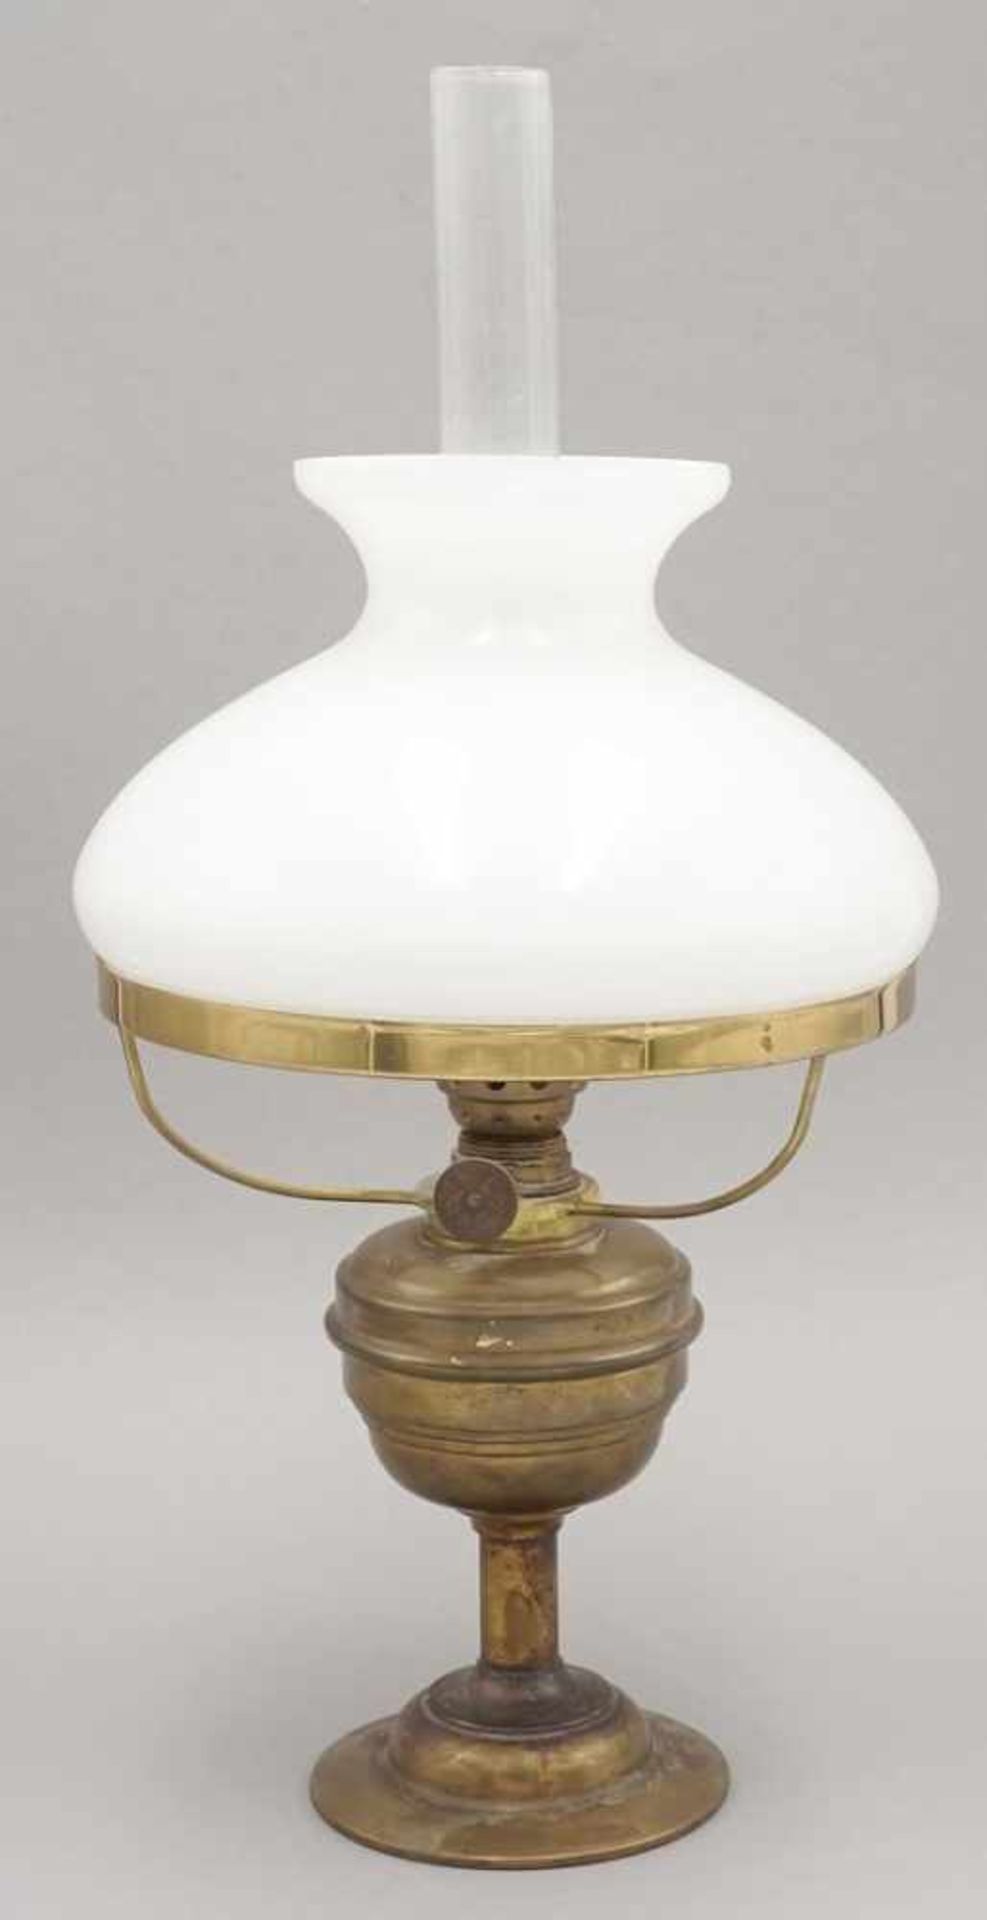 Petroleumlampe, um 1900Messing, mit Glaszylinder und Milchglasschirm, guter Zustand, H. 32 cm